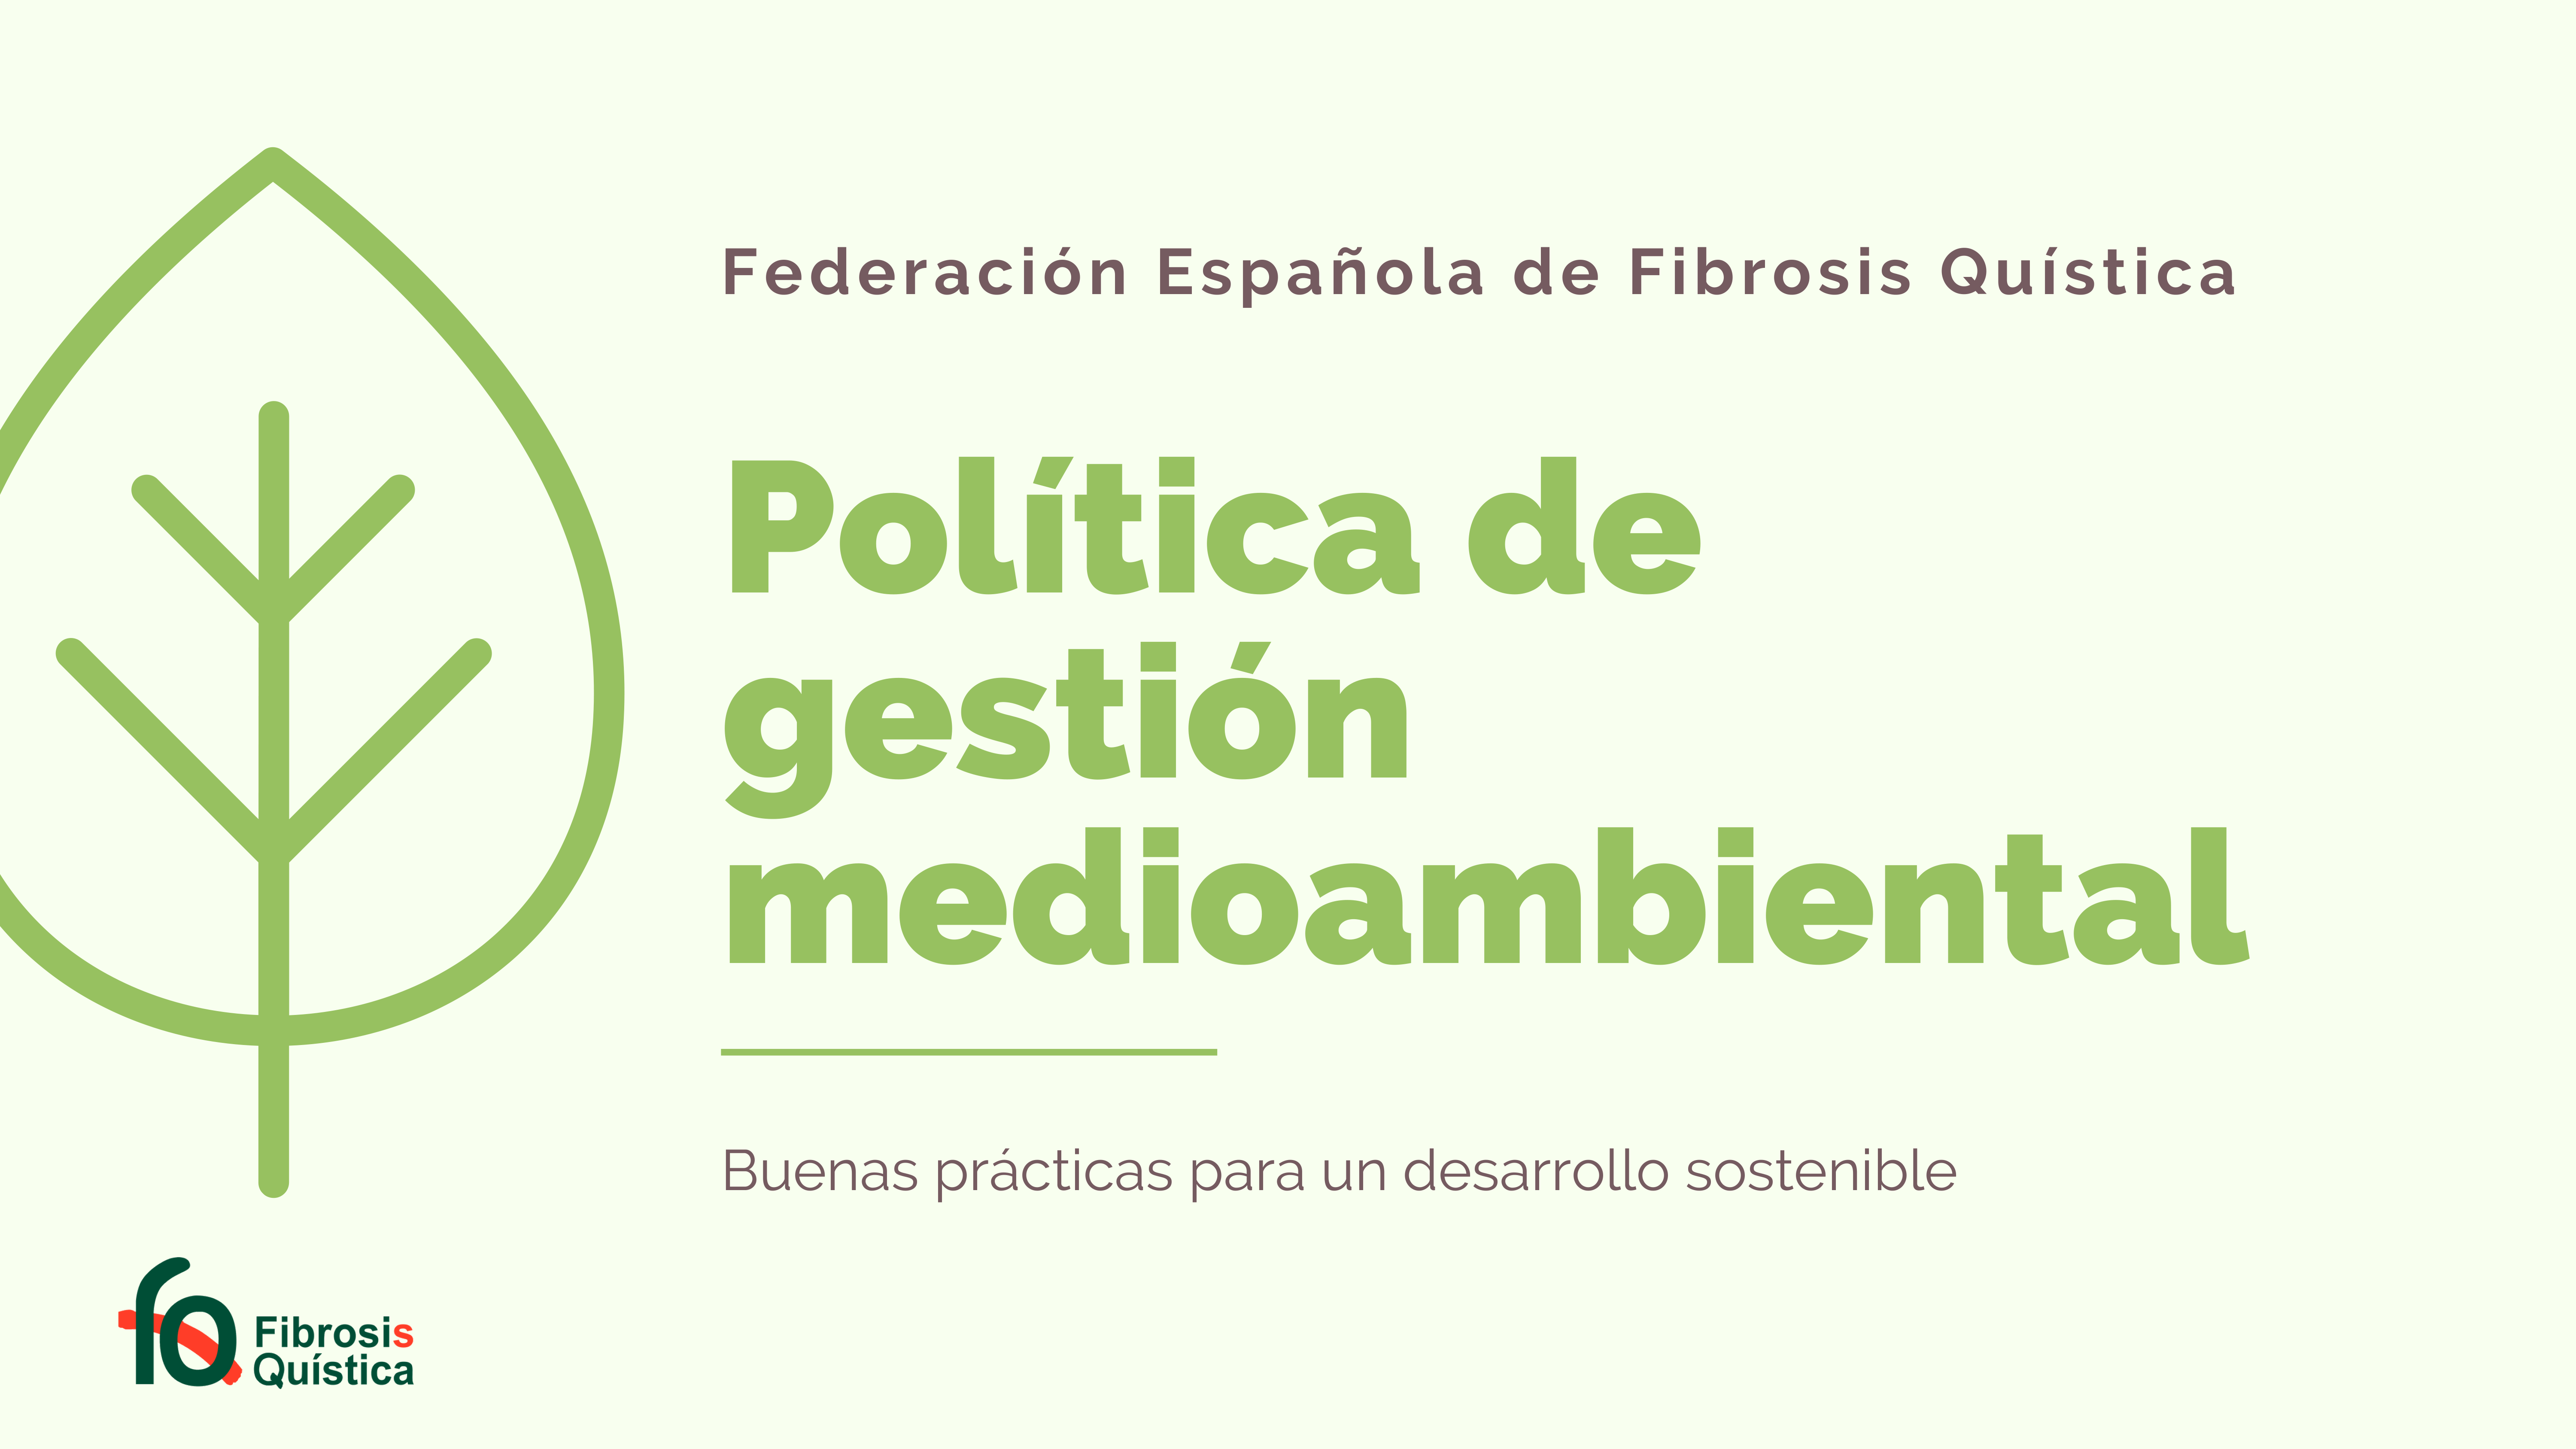 federacion española fibrosis quistica muestra compromiso medio ambiente desarrollo sostenible